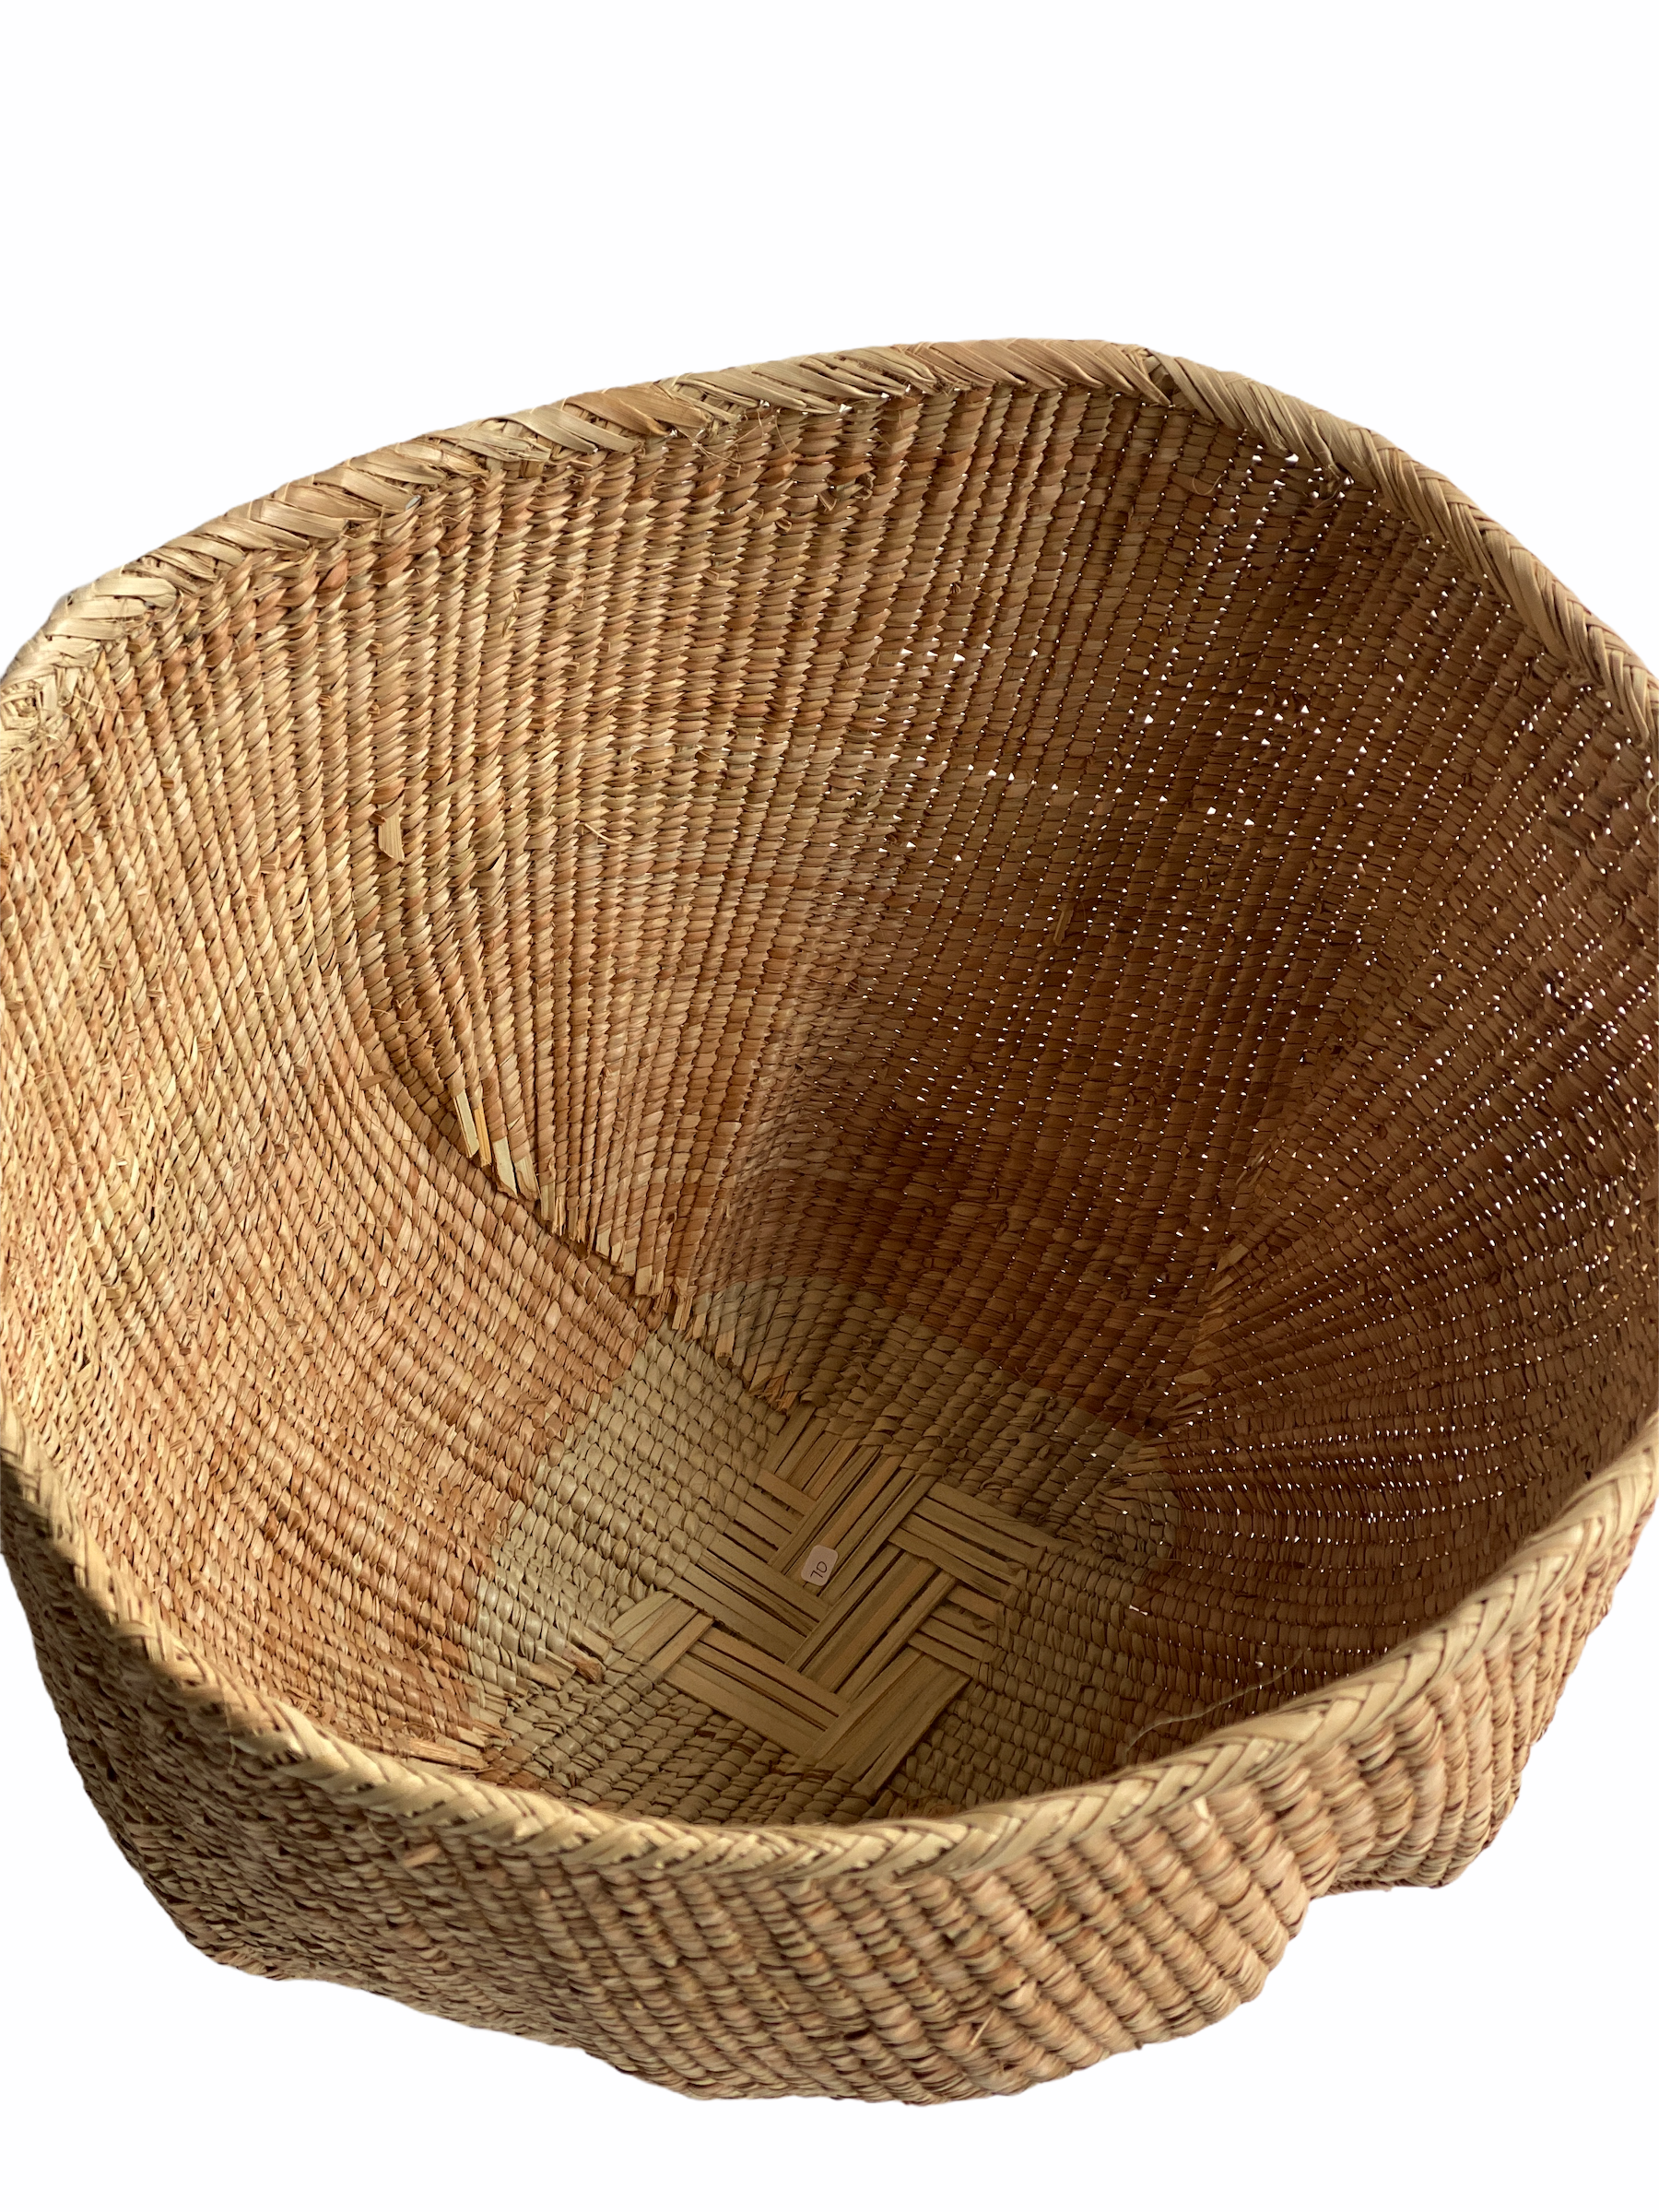 Tonga Basket Pot